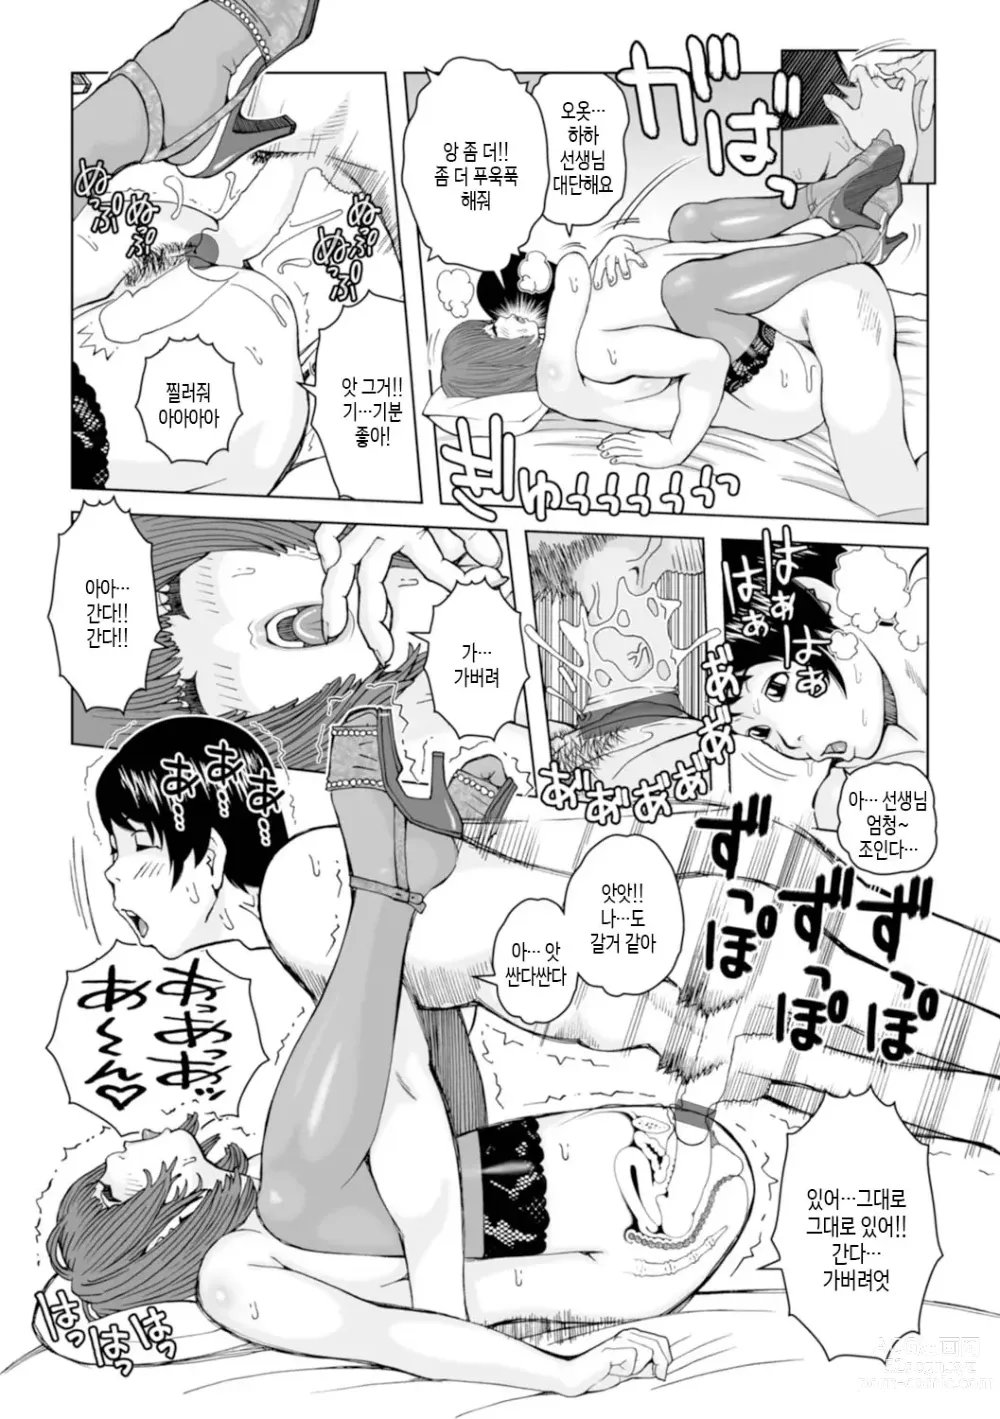 Page 107 of manga 엄마들... 임신시켜도 돼!? 제1권 중 일부